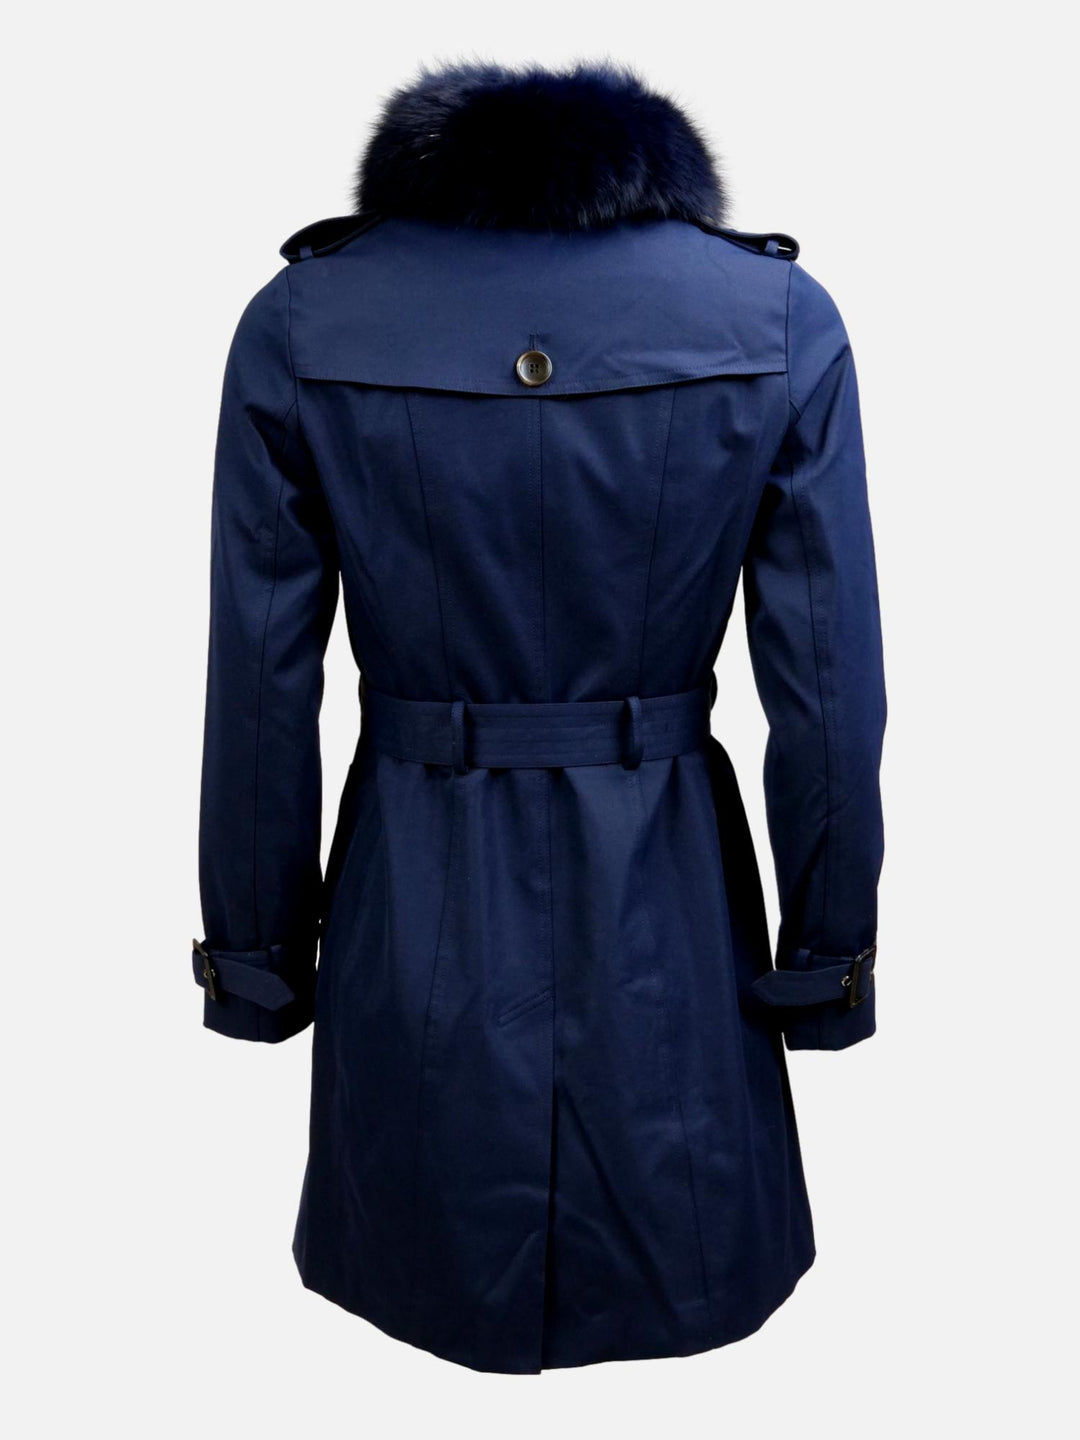 Gänseblümchen-Trenchcoat, 90 cm. - Kragen - Textil - Damen - Navy